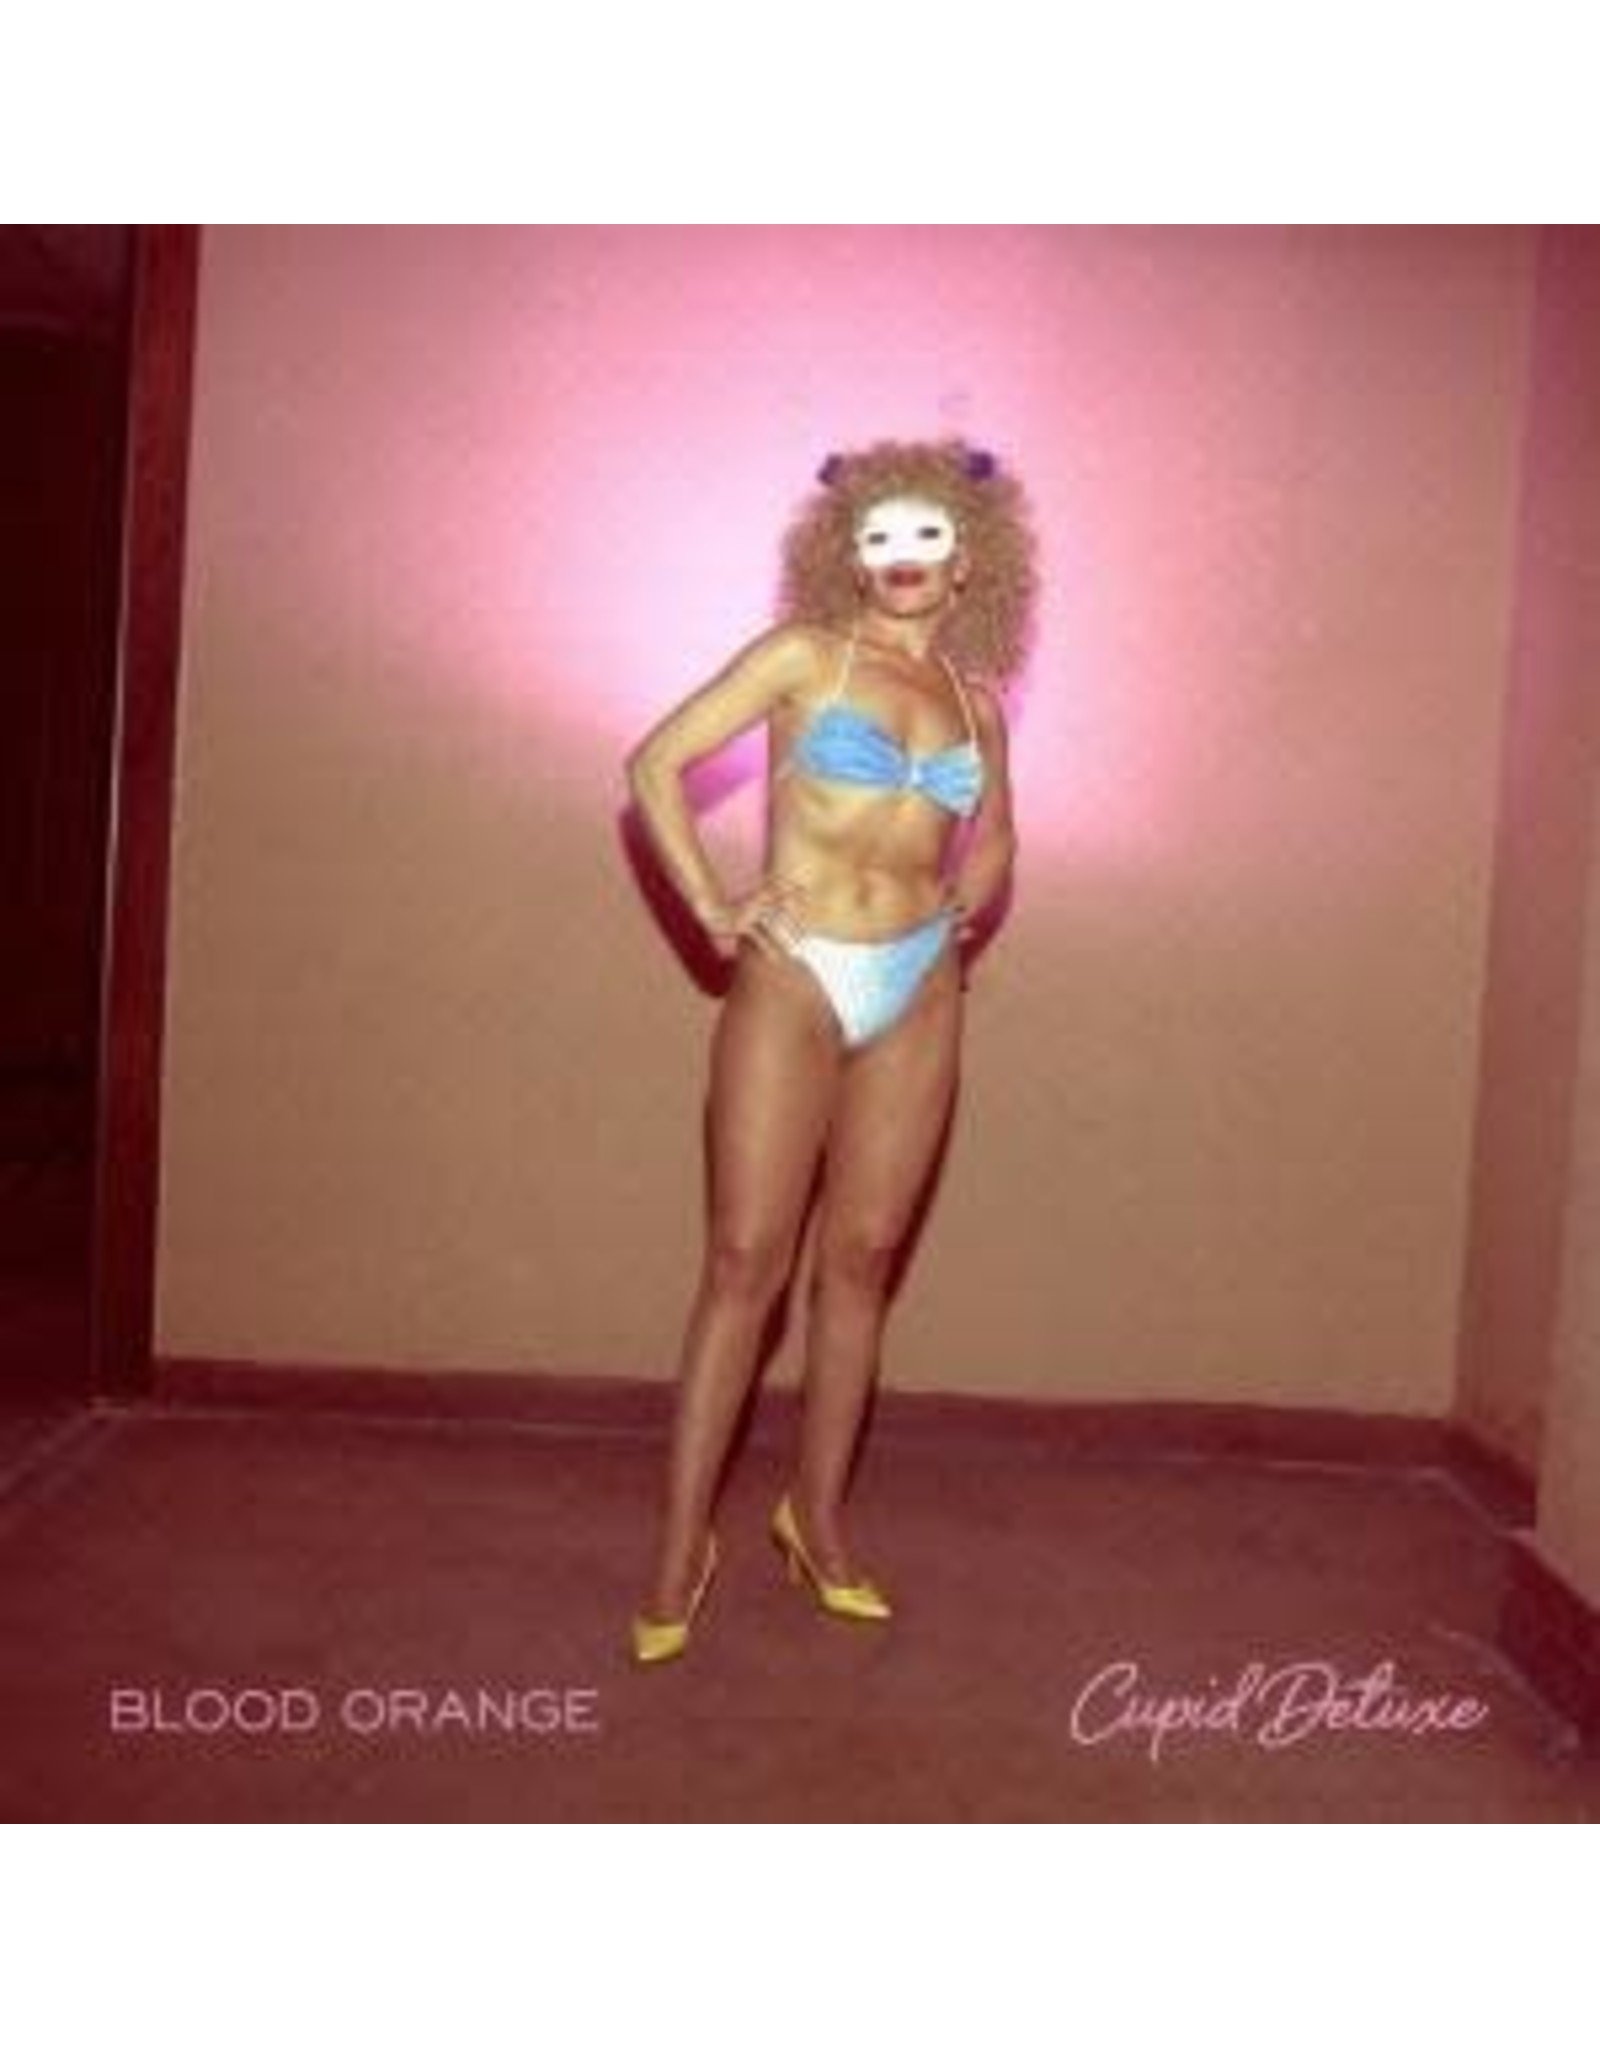 New Vinyl Blood Orange - Cupid Deluxe 2LP